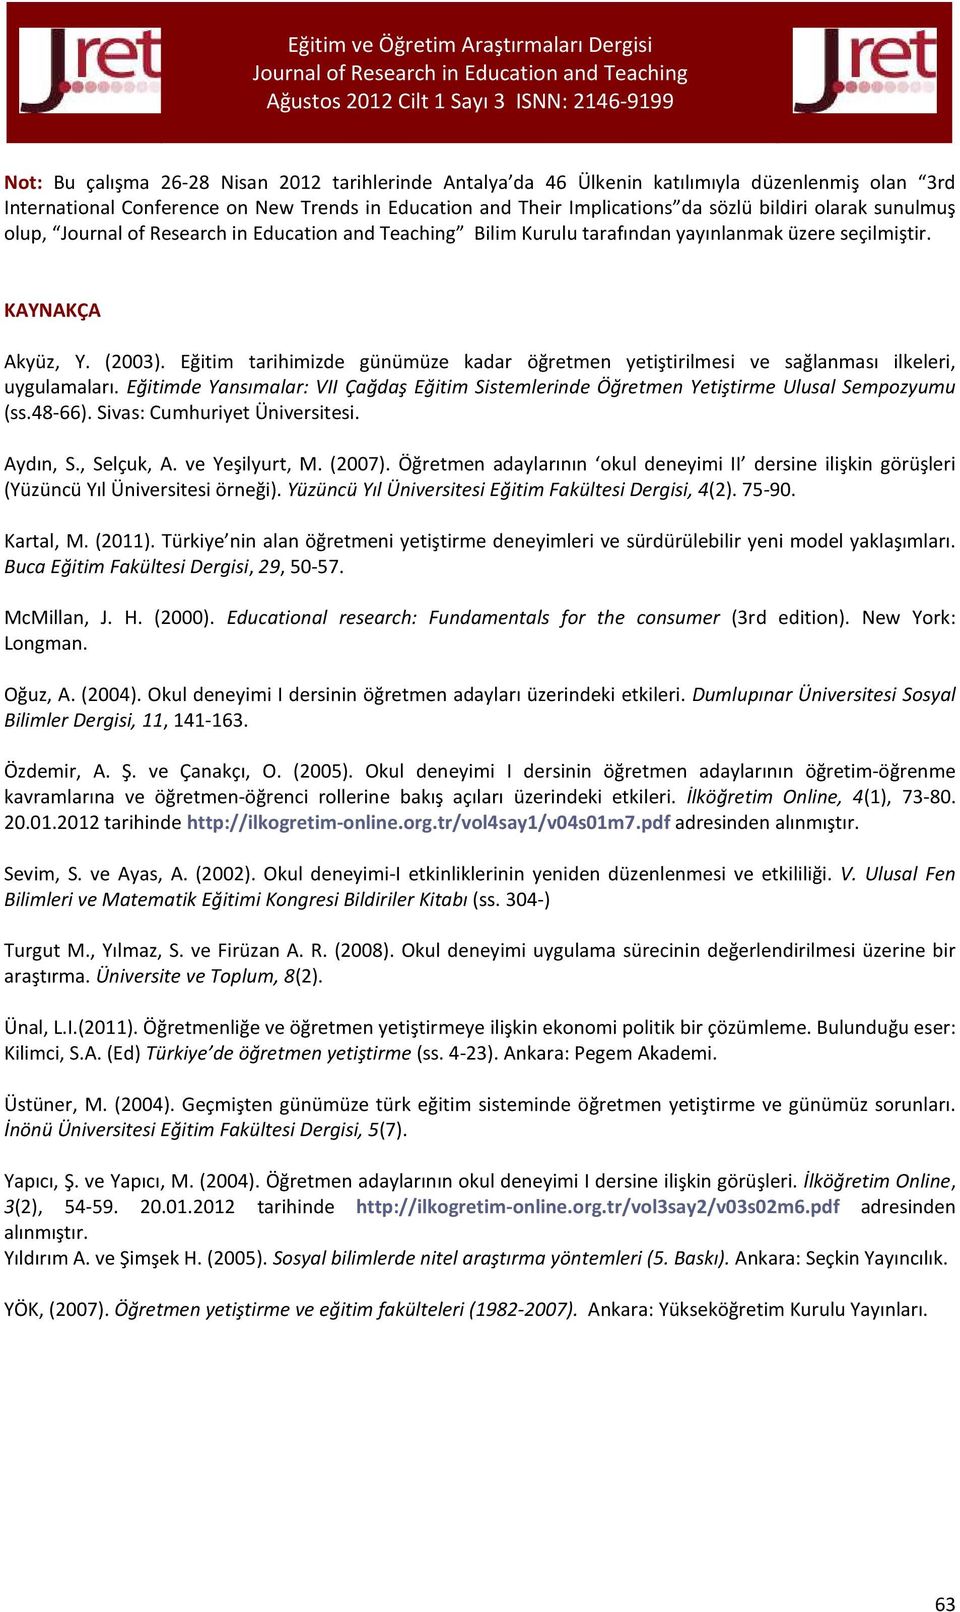 Eğitimde Yansımalar: VII Çağdaş Eğitim Sistemlerinde Öğretmen Yetiştirme Ulusal Sempozyumu (ss.48-66). Sivas: Cumhuriyet Üniversitesi. Aydın, S., Selçuk, A. ve Yeşilyurt, M. (2007).